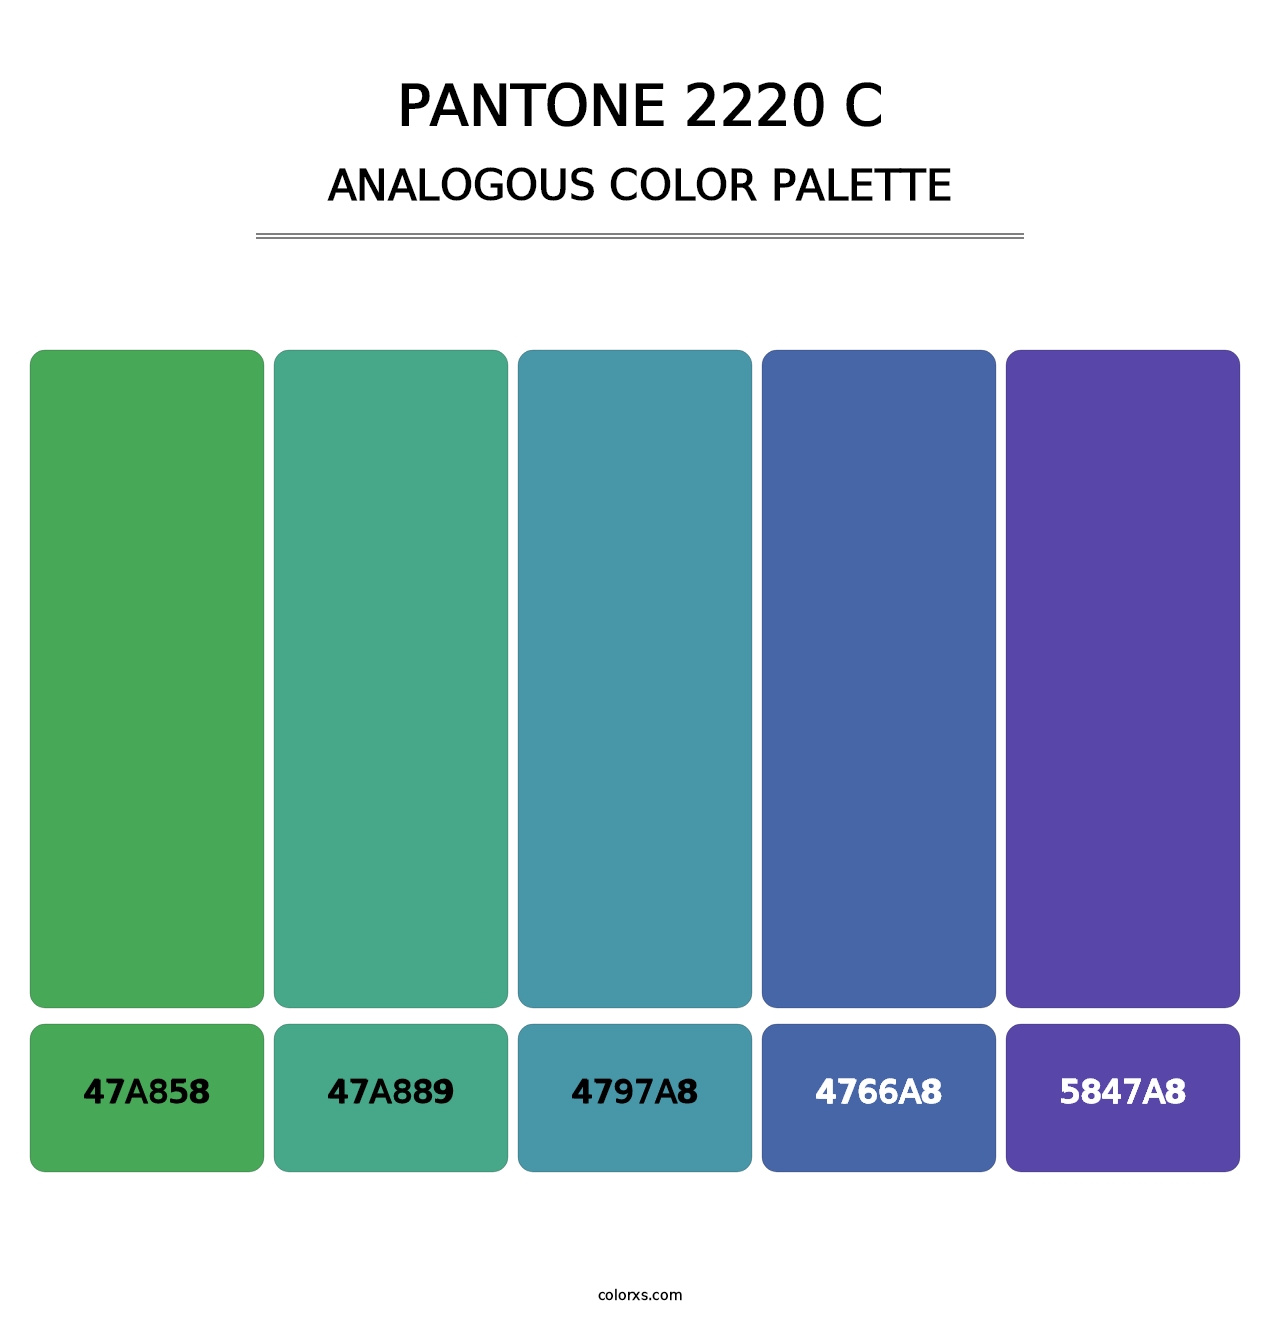 PANTONE 2220 C - Analogous Color Palette